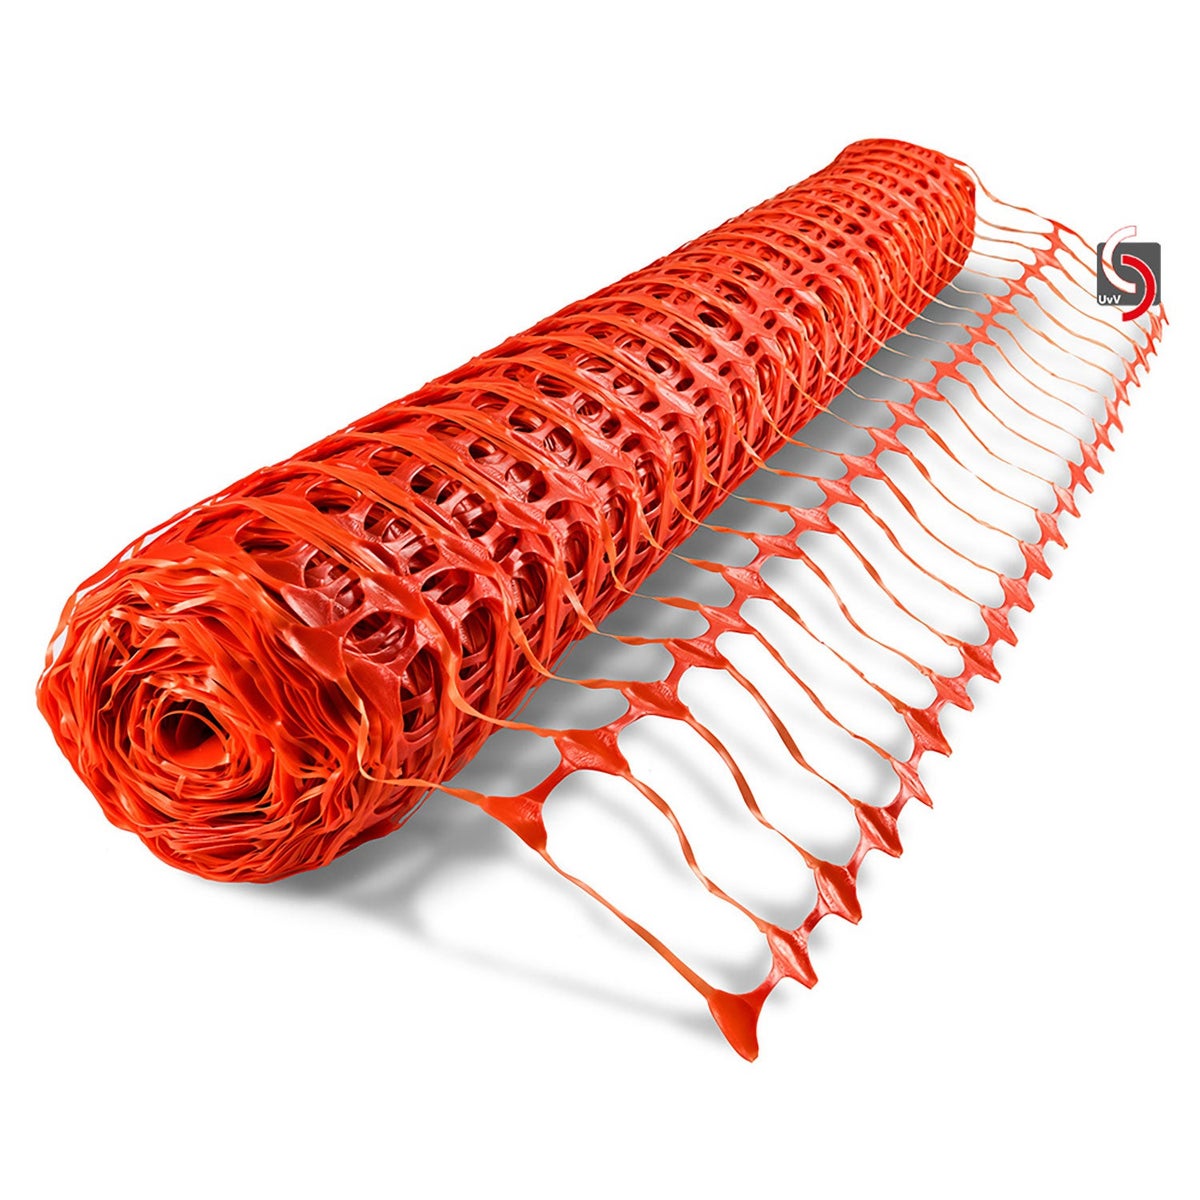 Fangzaun UvV-ELAST Absperrzaun flexibles Warnnetz 50 m Rolle x 1 m hoch | 4kg / orange